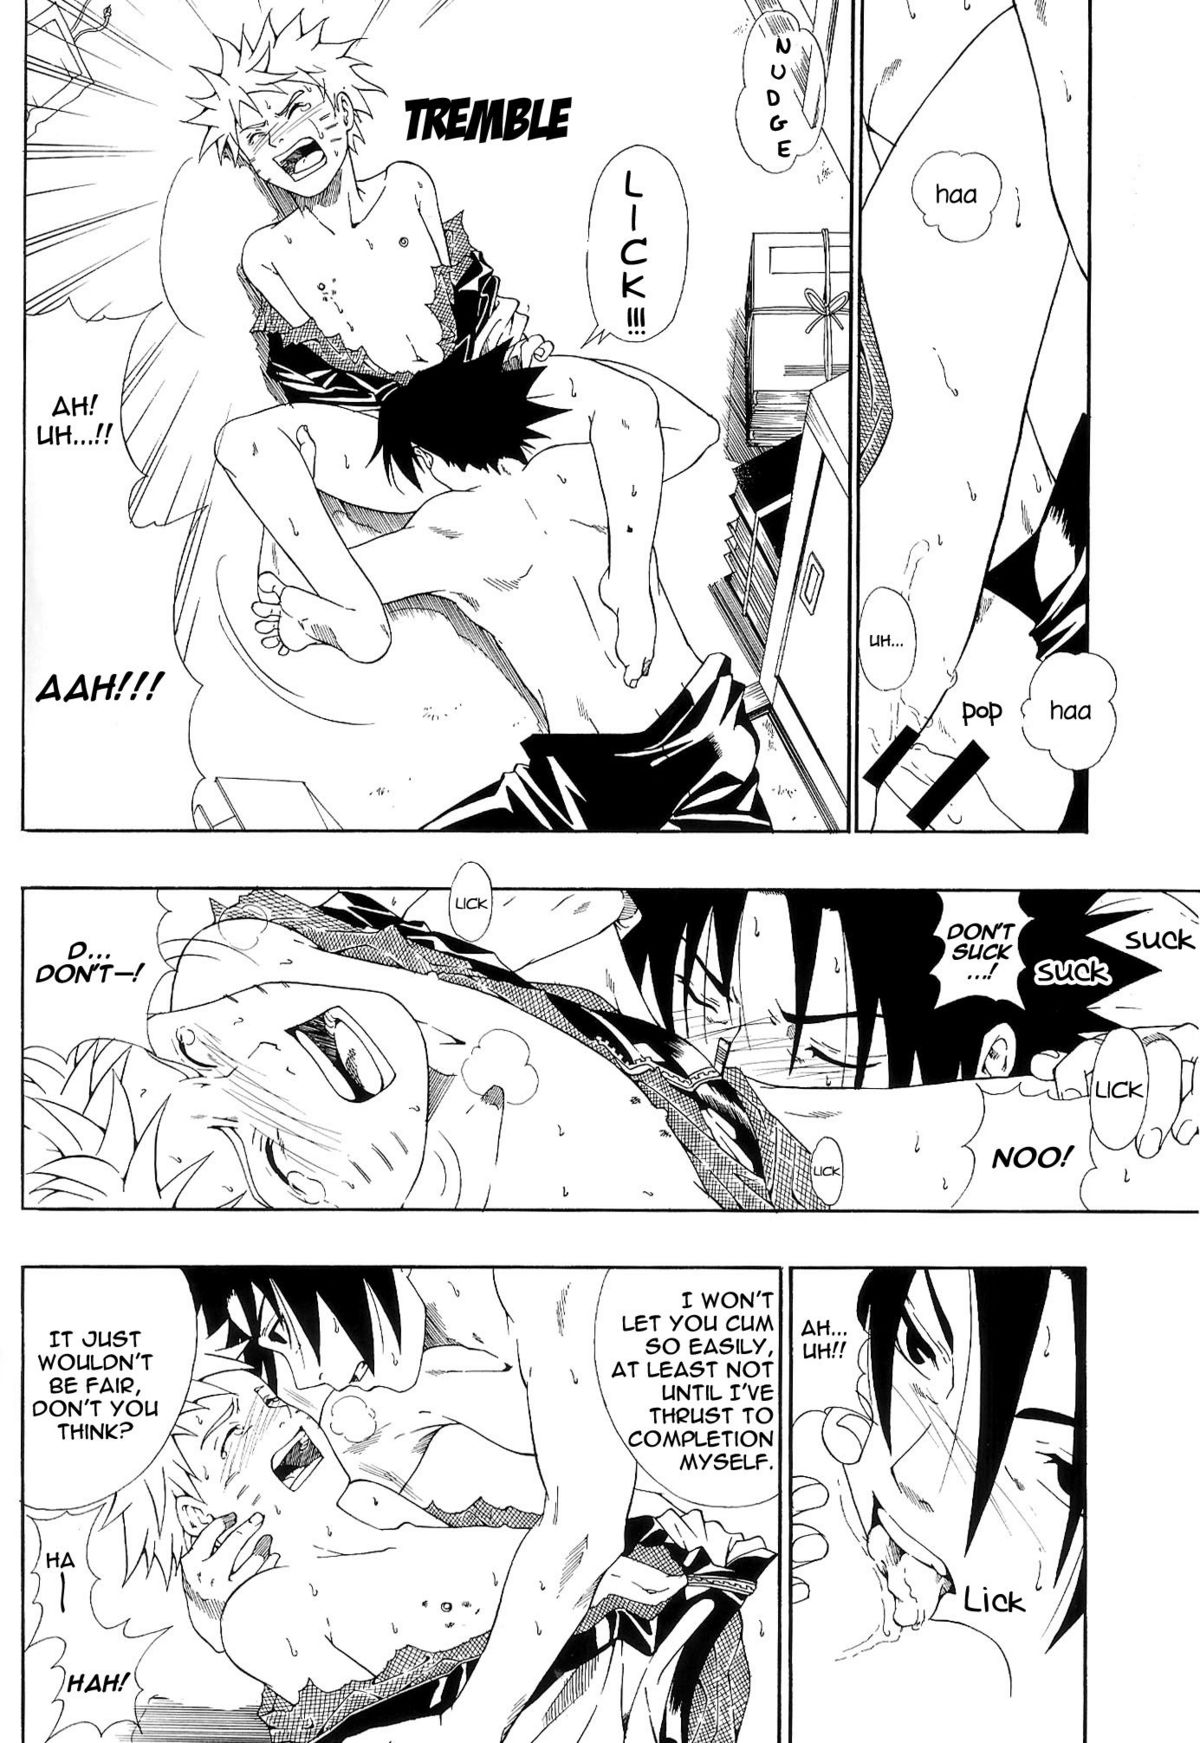 ERO ERO²: Volume 1.5  (NARUTO) [Sasuke X Naruto] YAOI -ENG- page 9 full